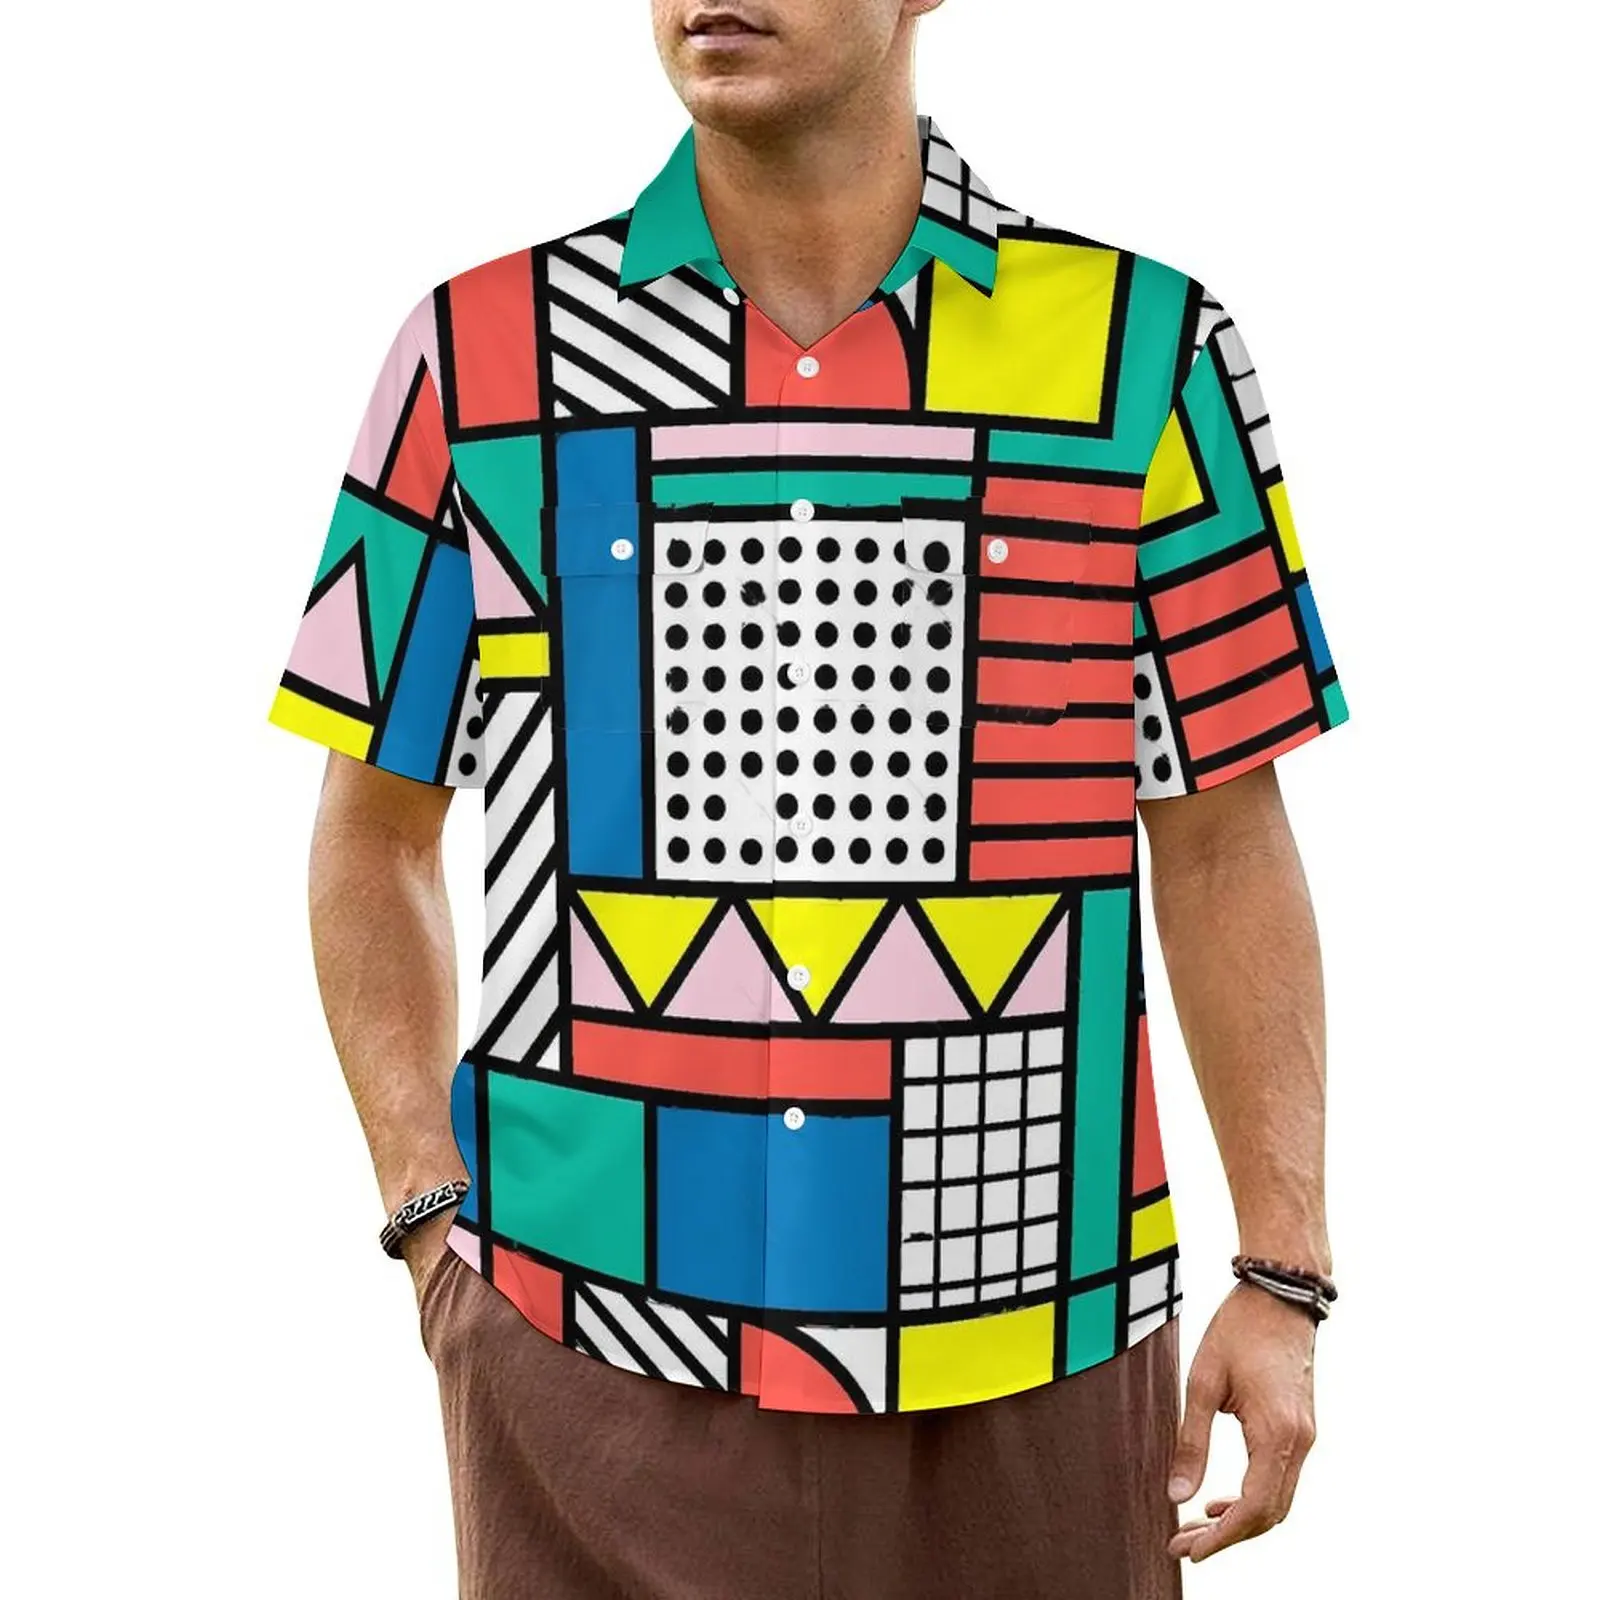 

Пляжная рубашка с цветными блоками Мемфиса, мужские винтажные повседневные рубашки с геометрическим рисунком, удобные Гавайские блузки с коротким рукавом большого размера 5XL на заказ